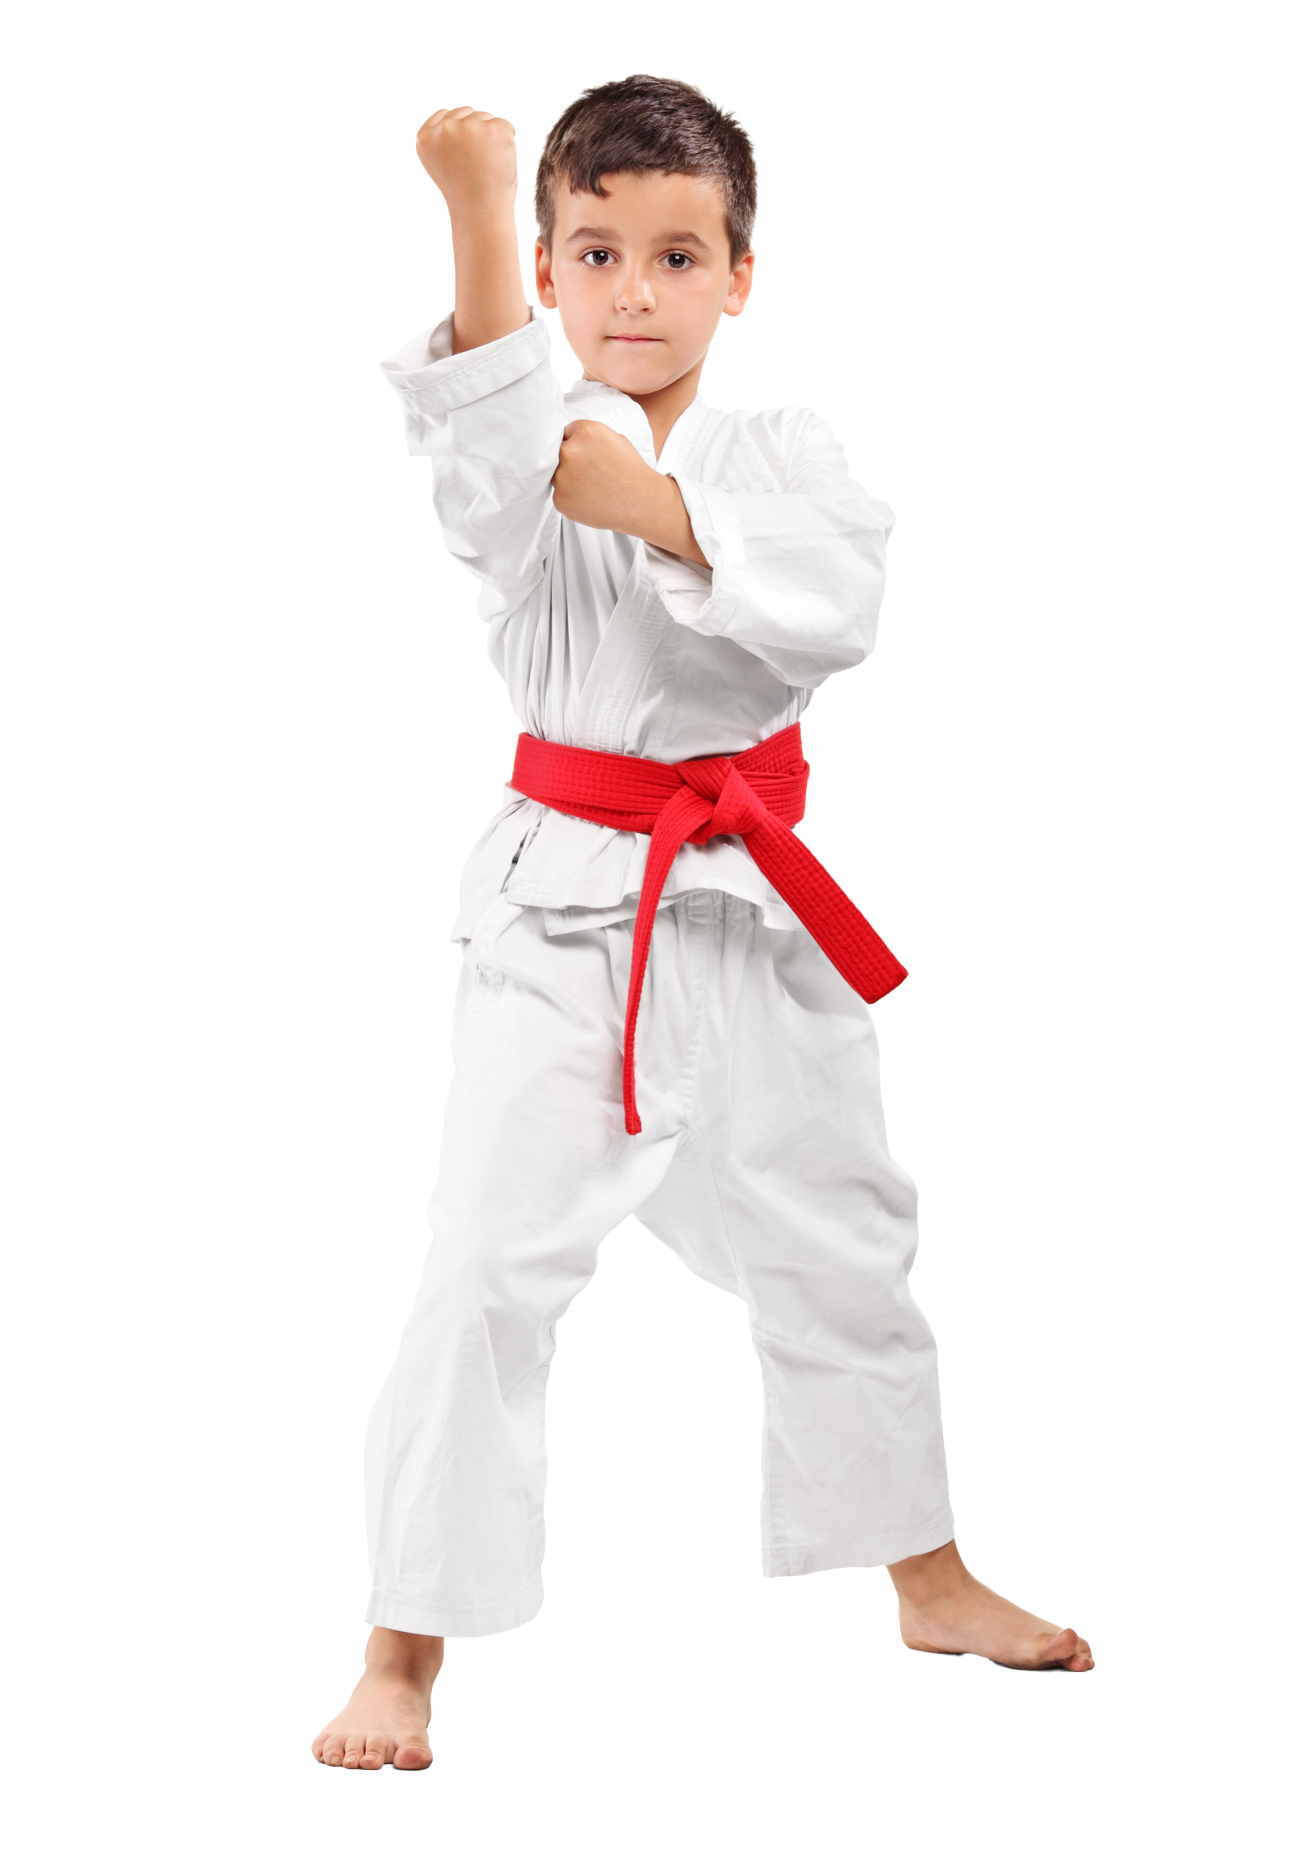 A Little Boy Wearing Karate Uniform 